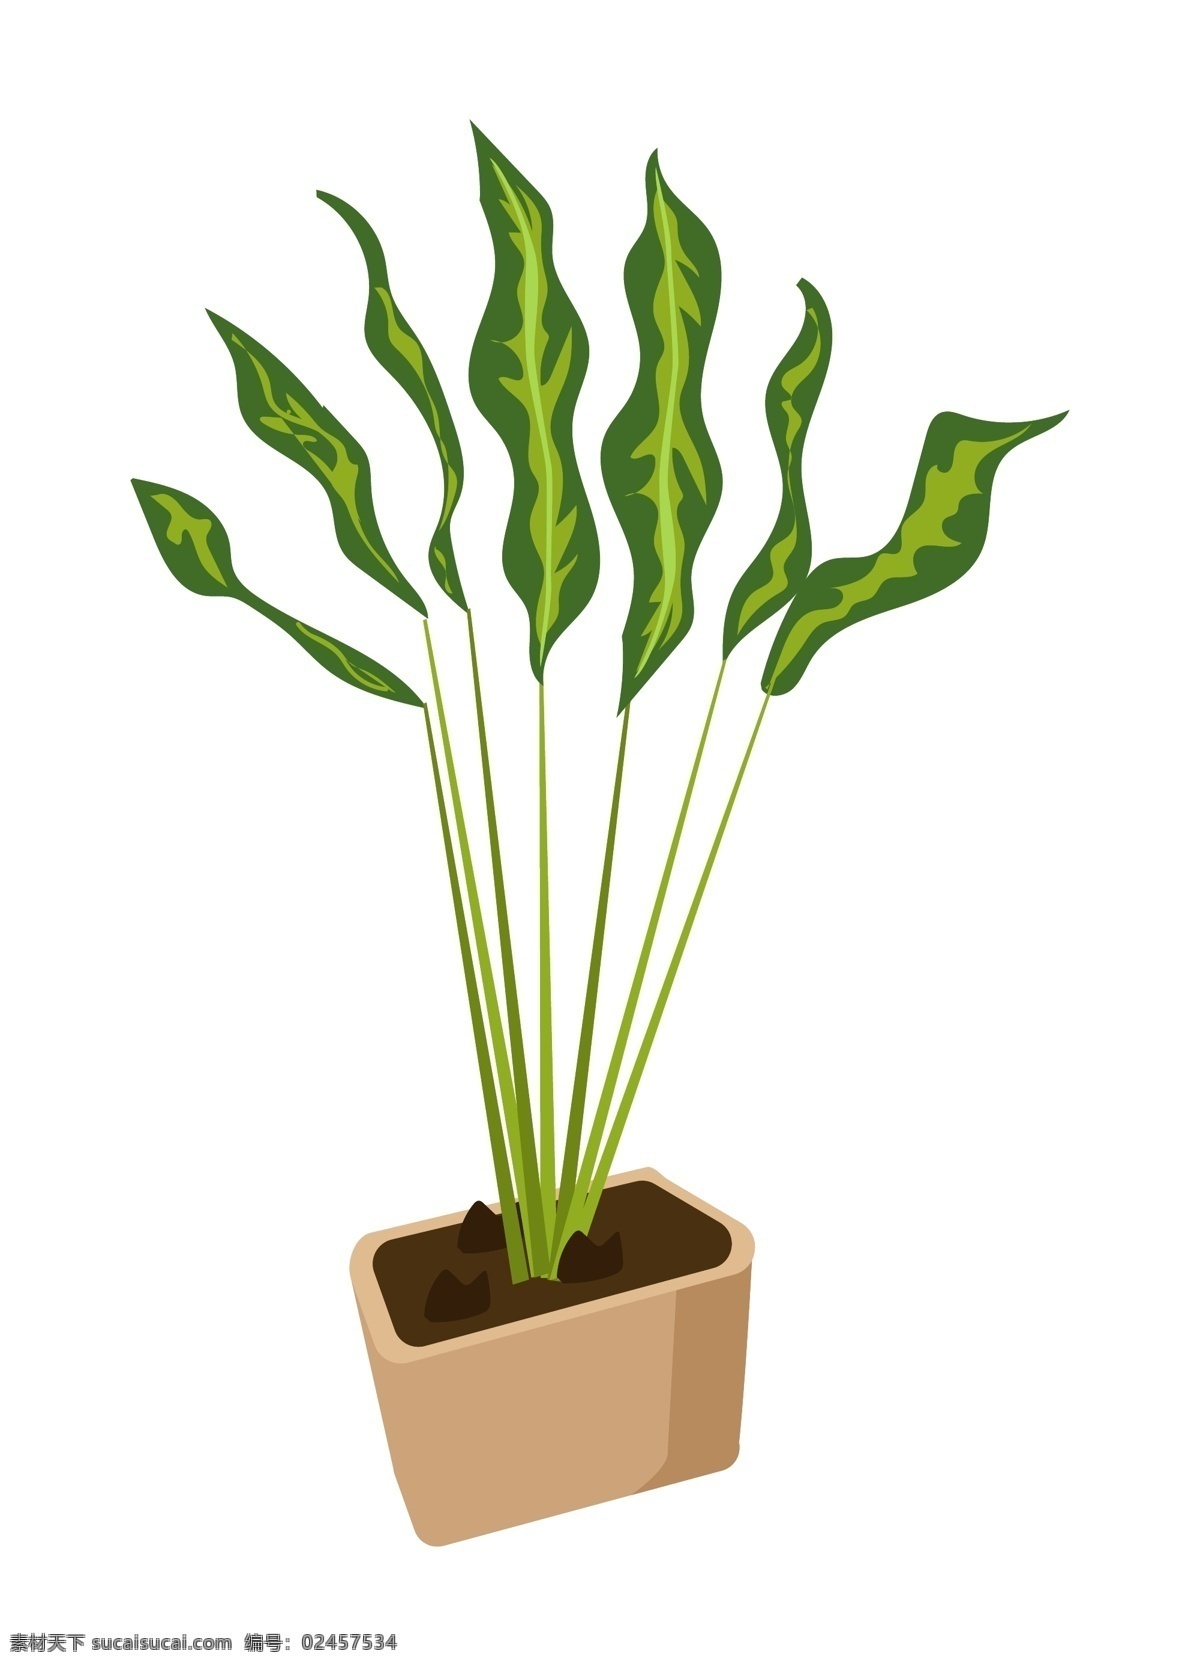 创意 绿色 盆栽 插画 创意盆栽插画 黄色的花盆 绿色的植物 卡通植物插画 绿色的茎秆 创意植物插画